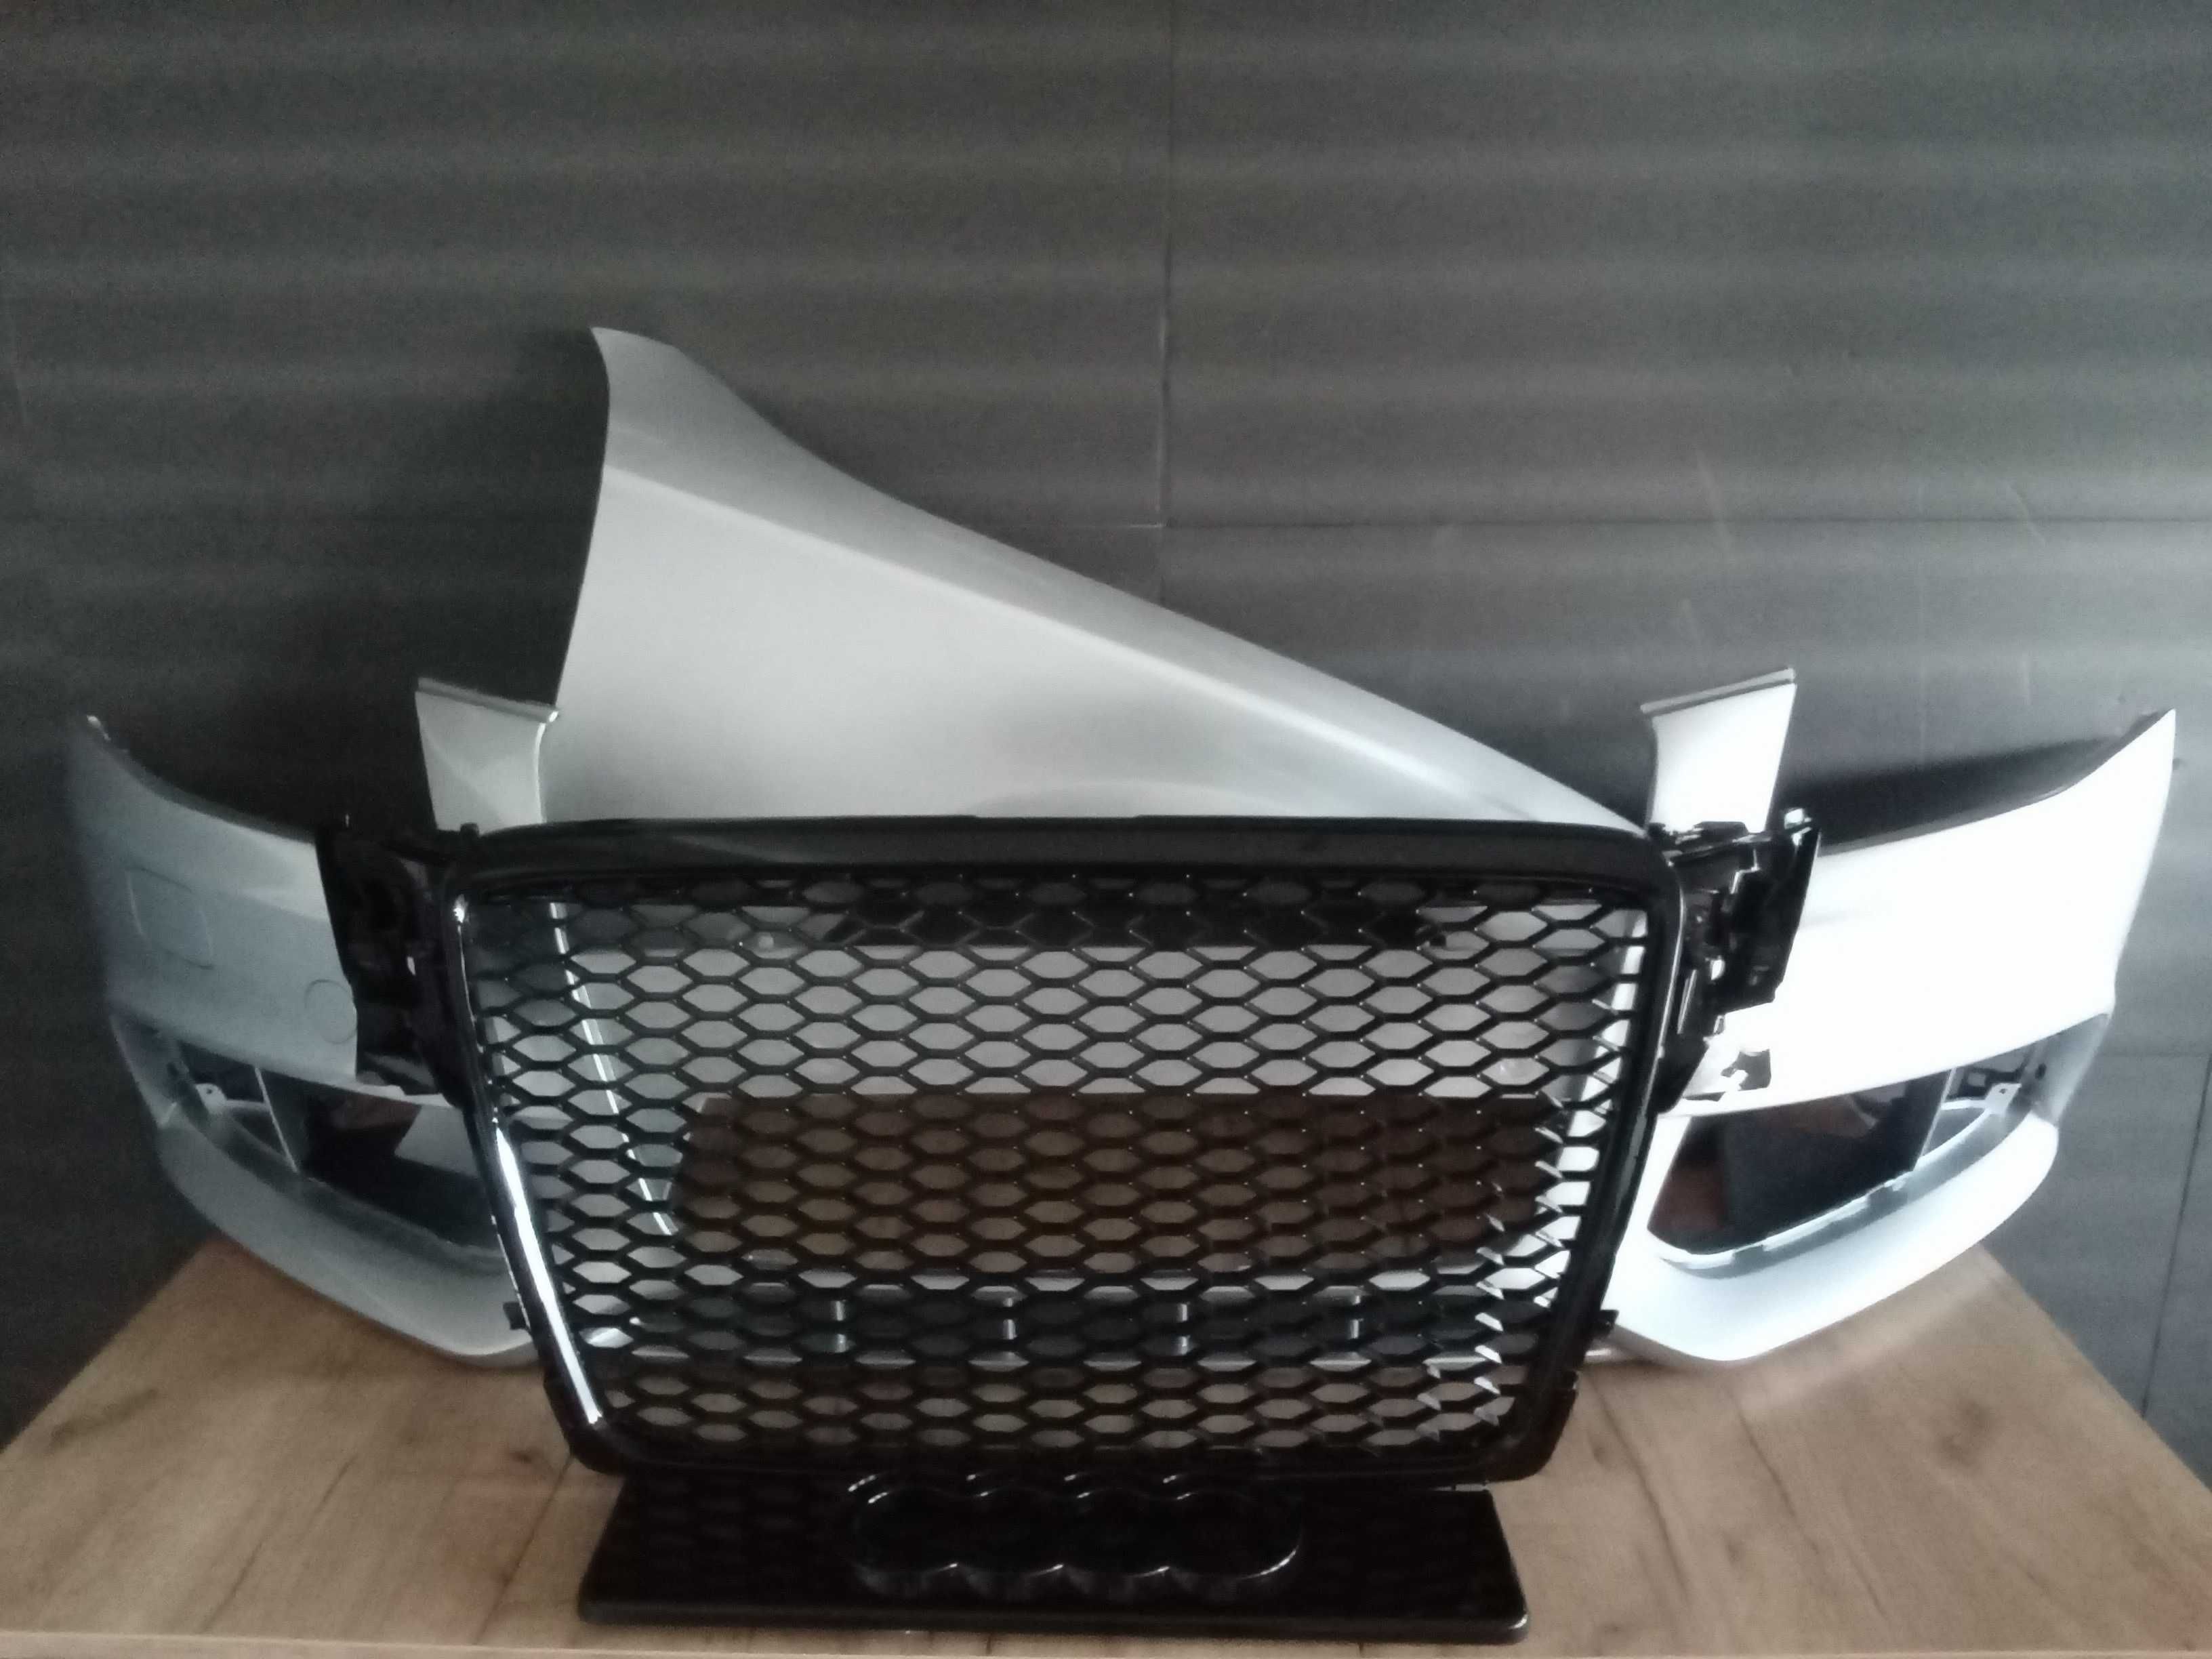 Bara,Aripa,Grila radiator Audi A4 B8 Negru Alb Gri Argintiu Albastru